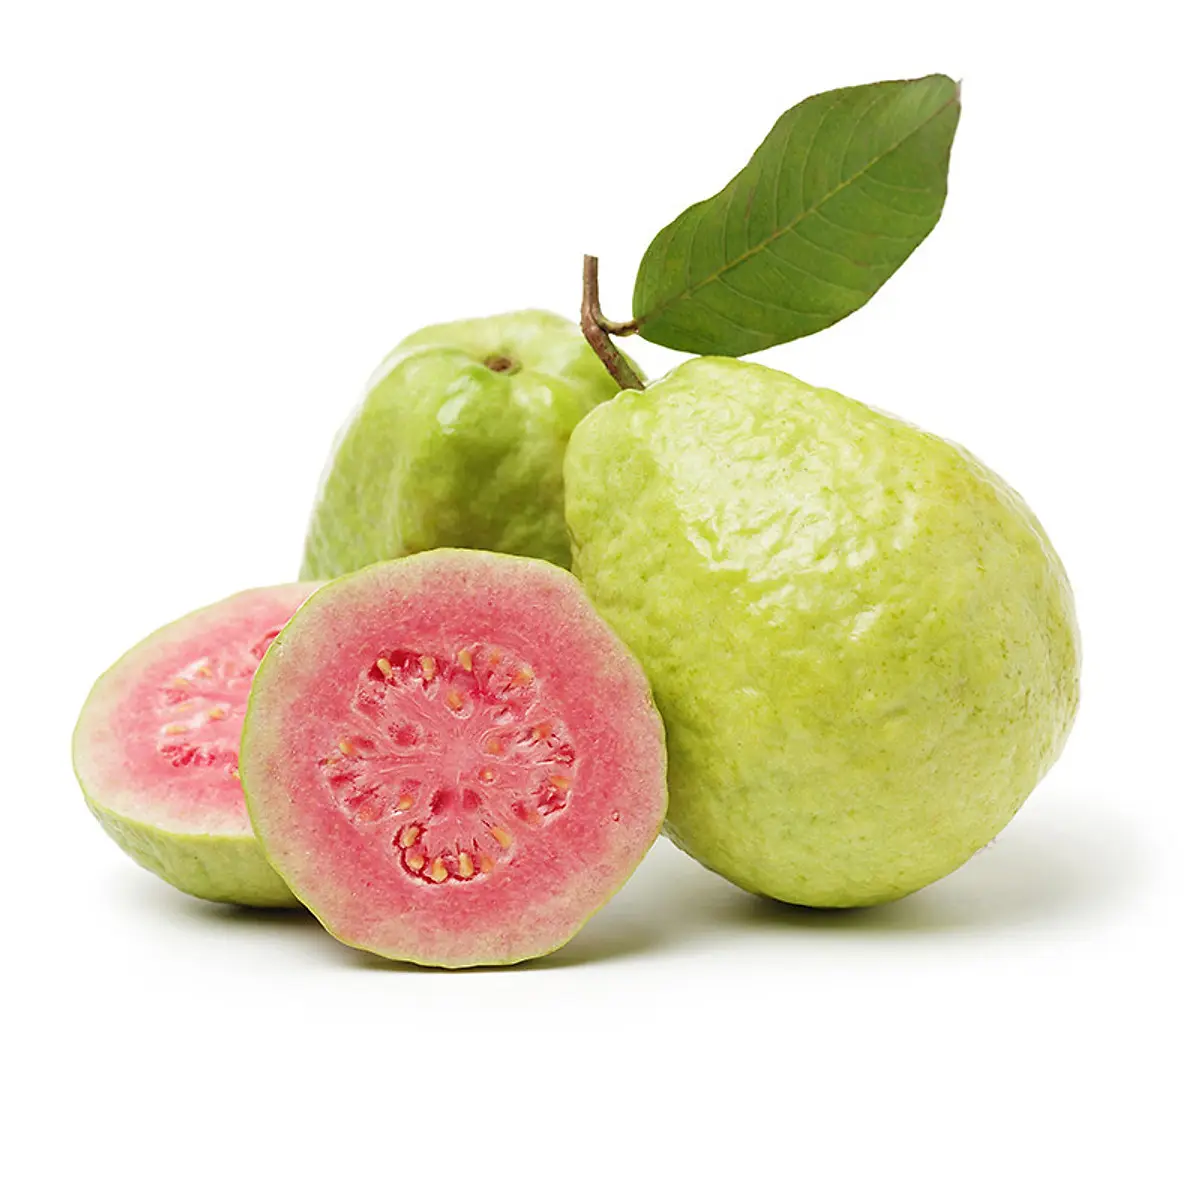 Лучшая поставка, высокое качество, 100% свежий розовый фрукт гуавы/гуавы для экспорта